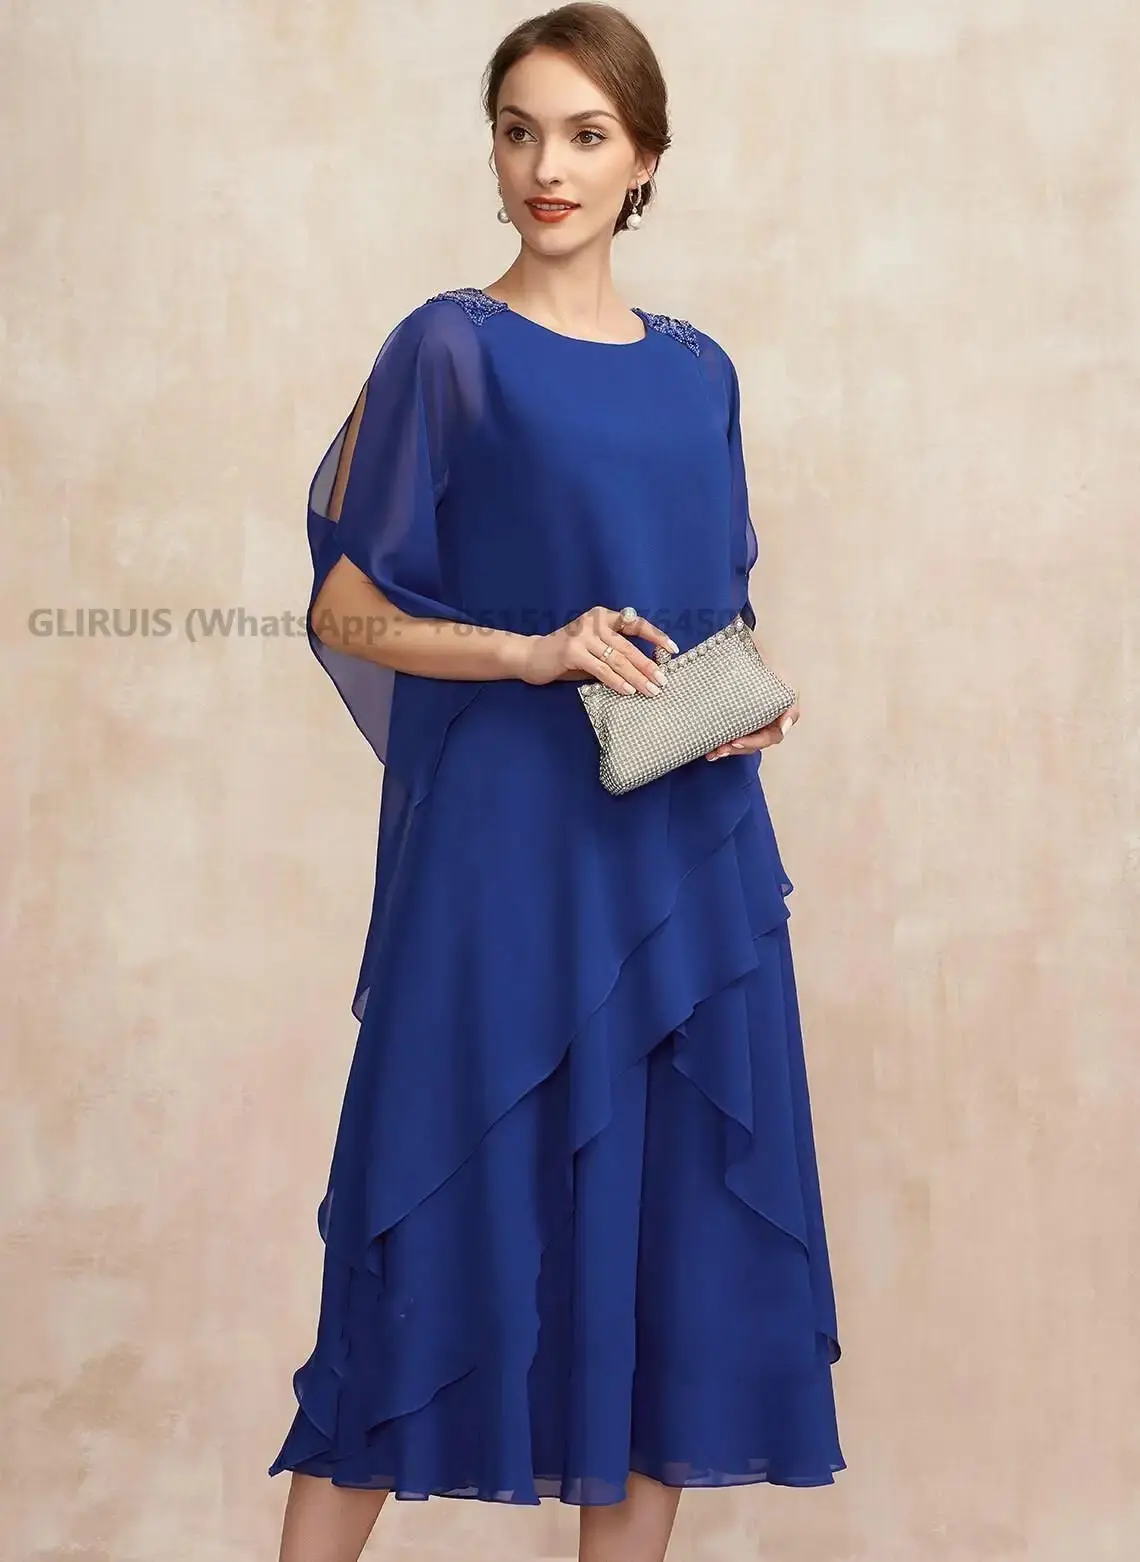 

Женское шифоновое платье It's yiiya, синее элегантное платье до середины икры с круглым вырезом и оборками на лето 2019